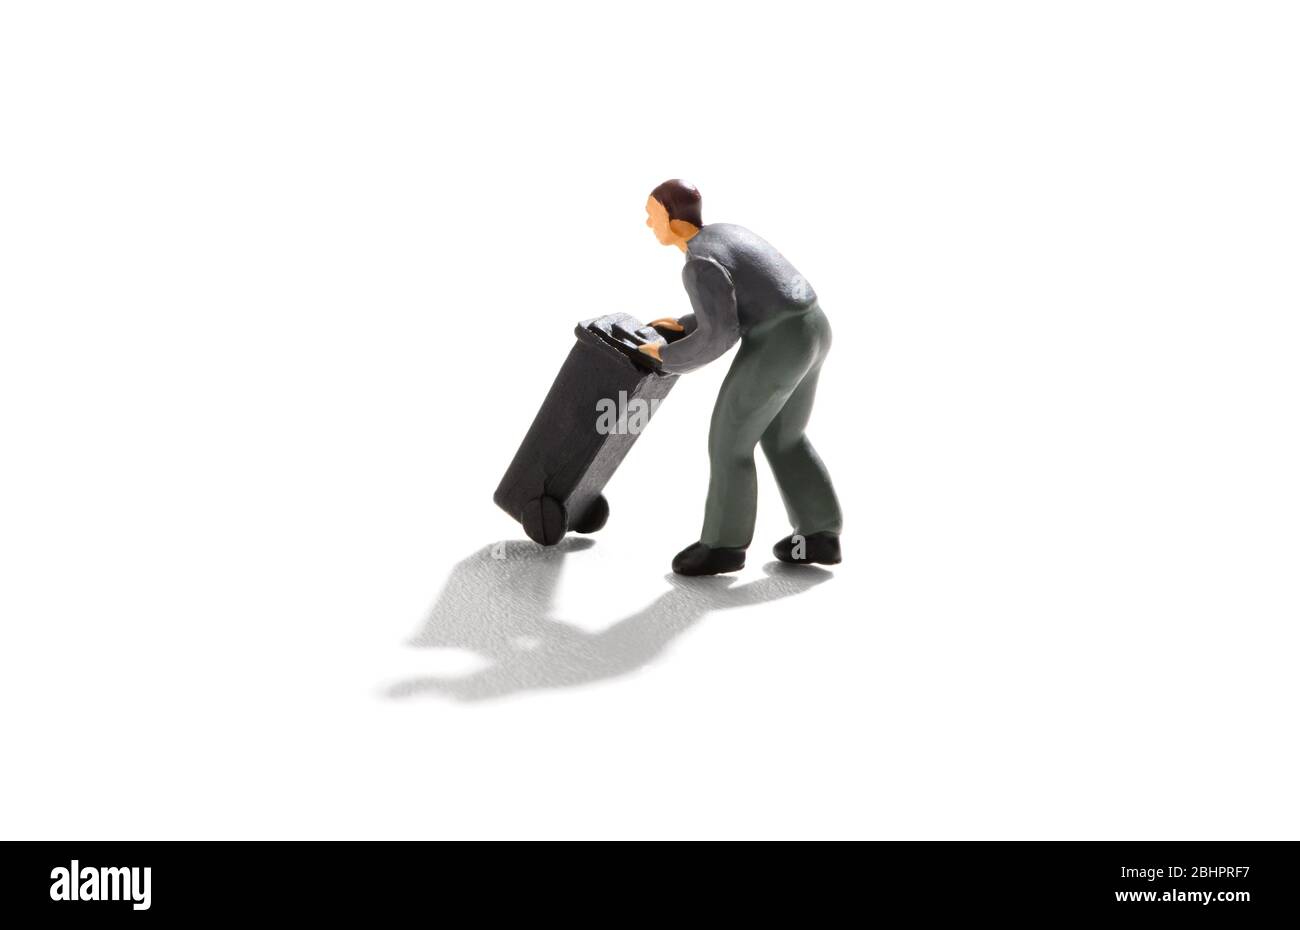 Homme miniature poussant une poubelle ou une roue noire sur un fond blanc avec ombre portée dans un concept d'élimination des déchets Banque D'Images